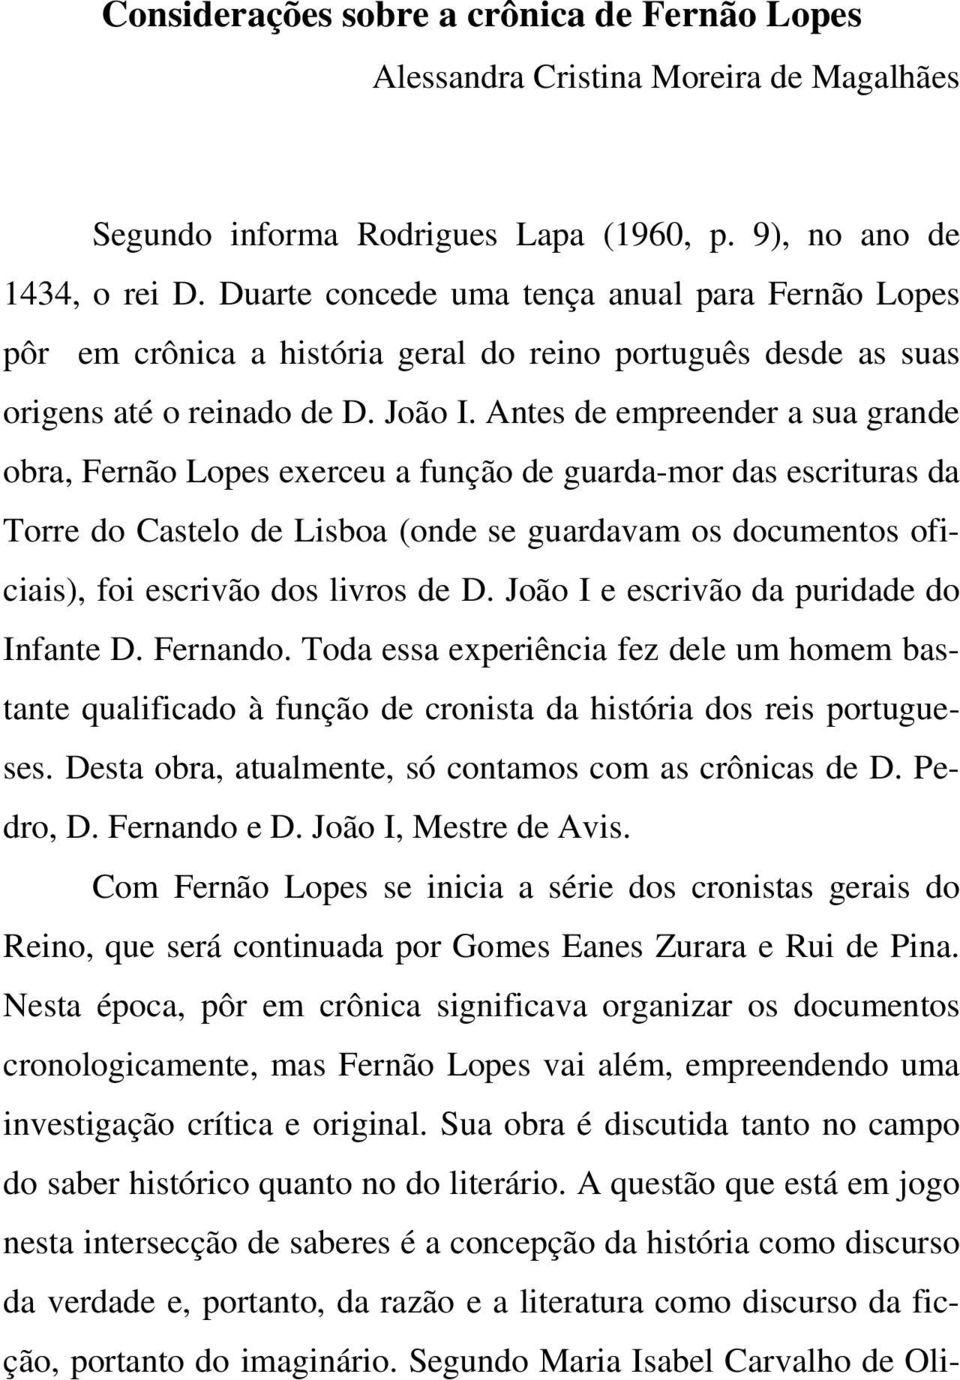 Antes de empreender a sua grande obra, Fernão Lopes exerceu a função de guarda-mor das escrituras da Torre do Castelo de Lisboa (onde se guardavam os documentos oficiais), foi escrivão dos livros de